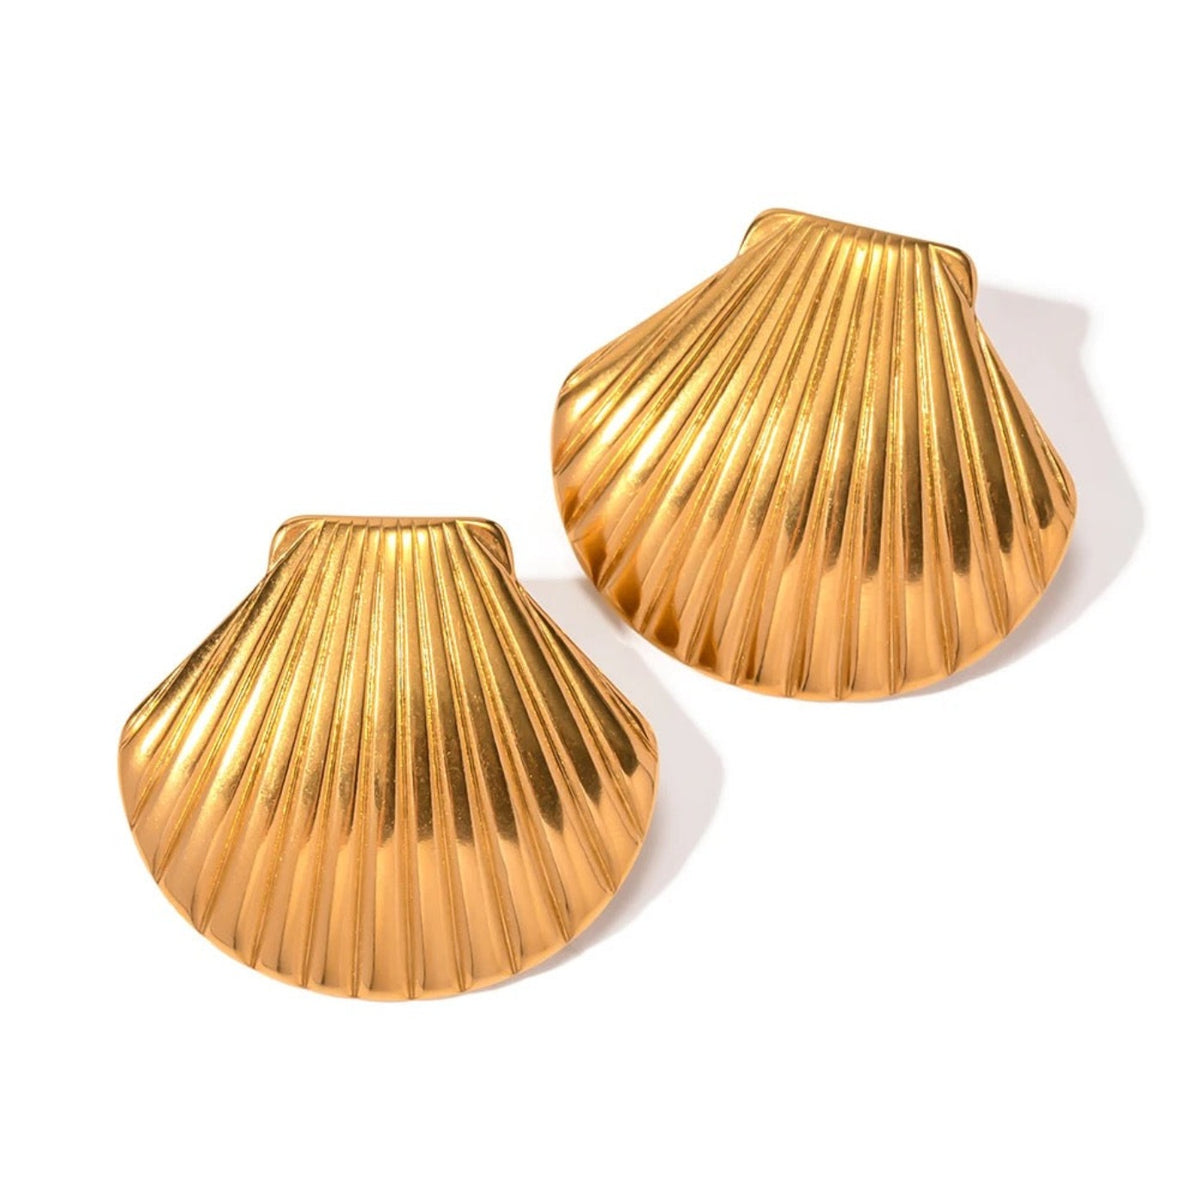 18k gold plated shell earrings auruem noah the label cendre